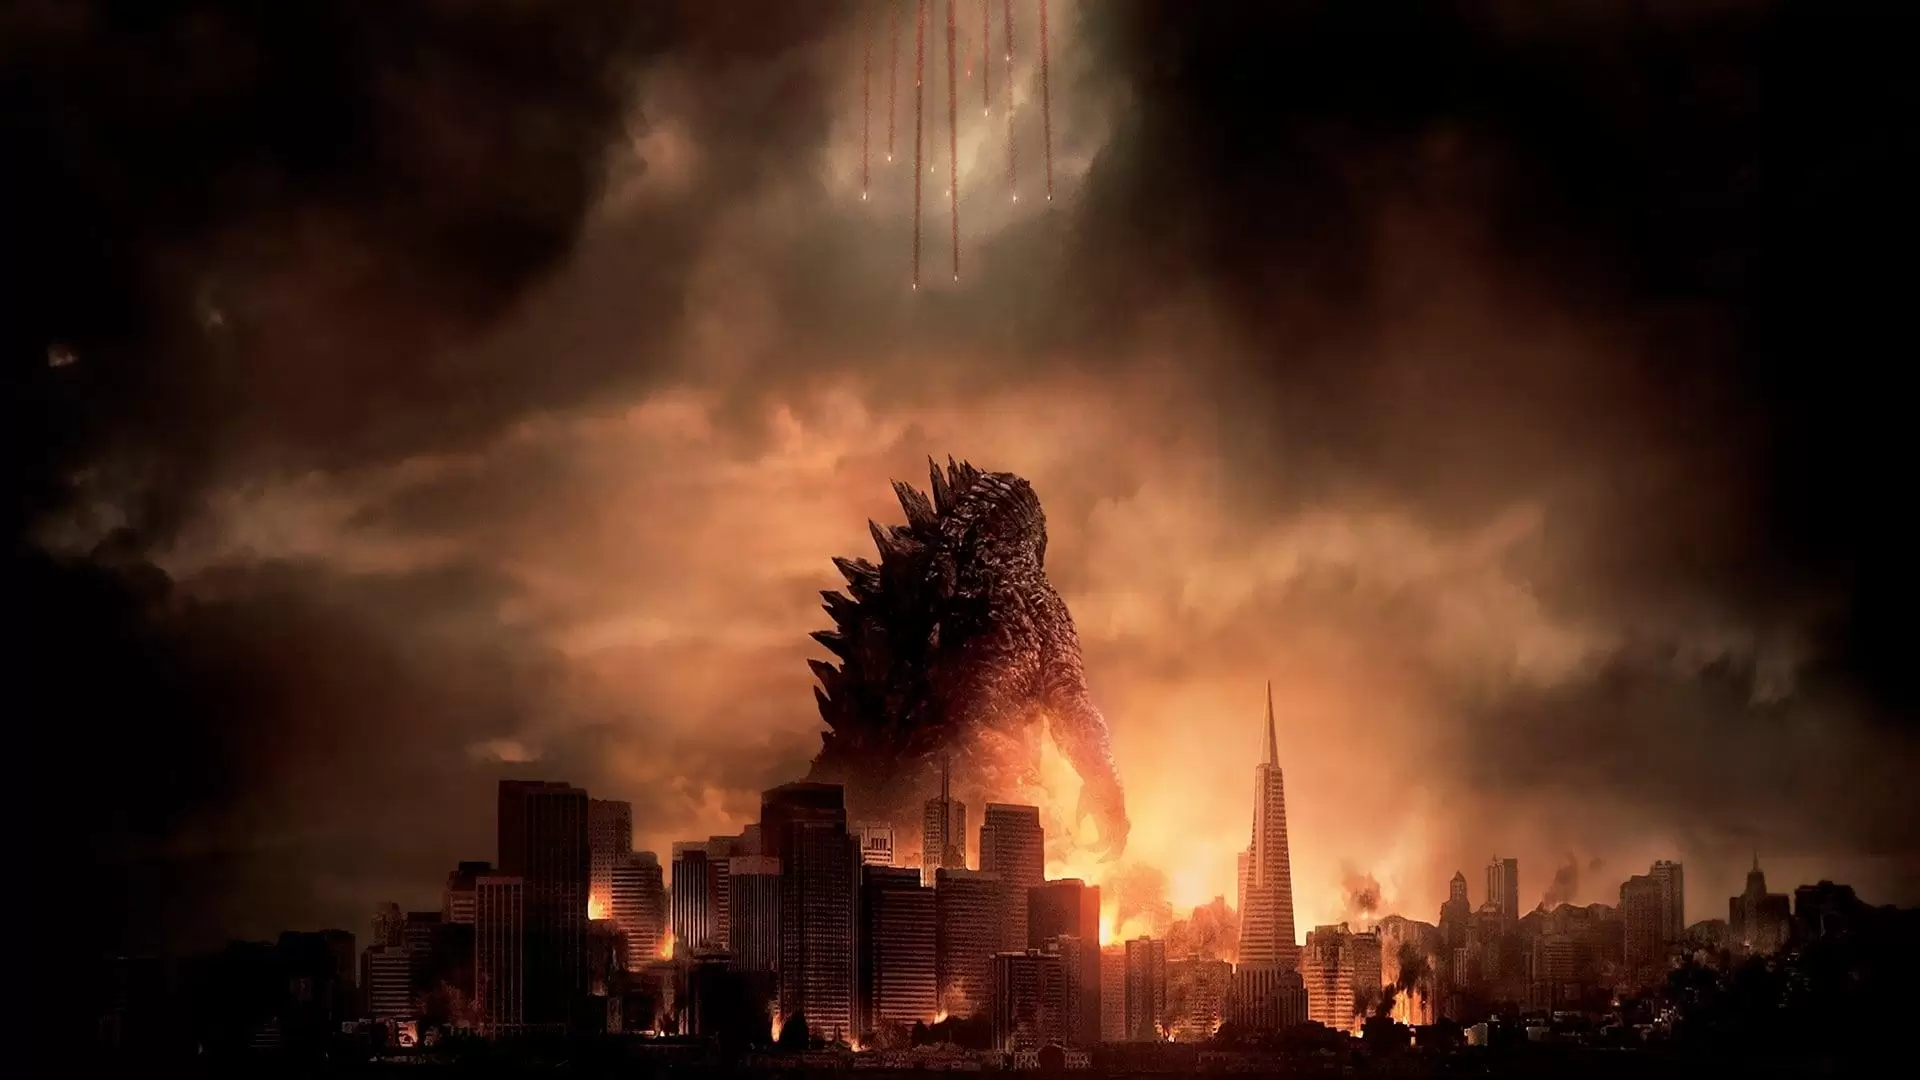 دانلود فیلم Godzilla 2014 (گودزیلا) با زیرنویس فارسی و تماشای آنلاین